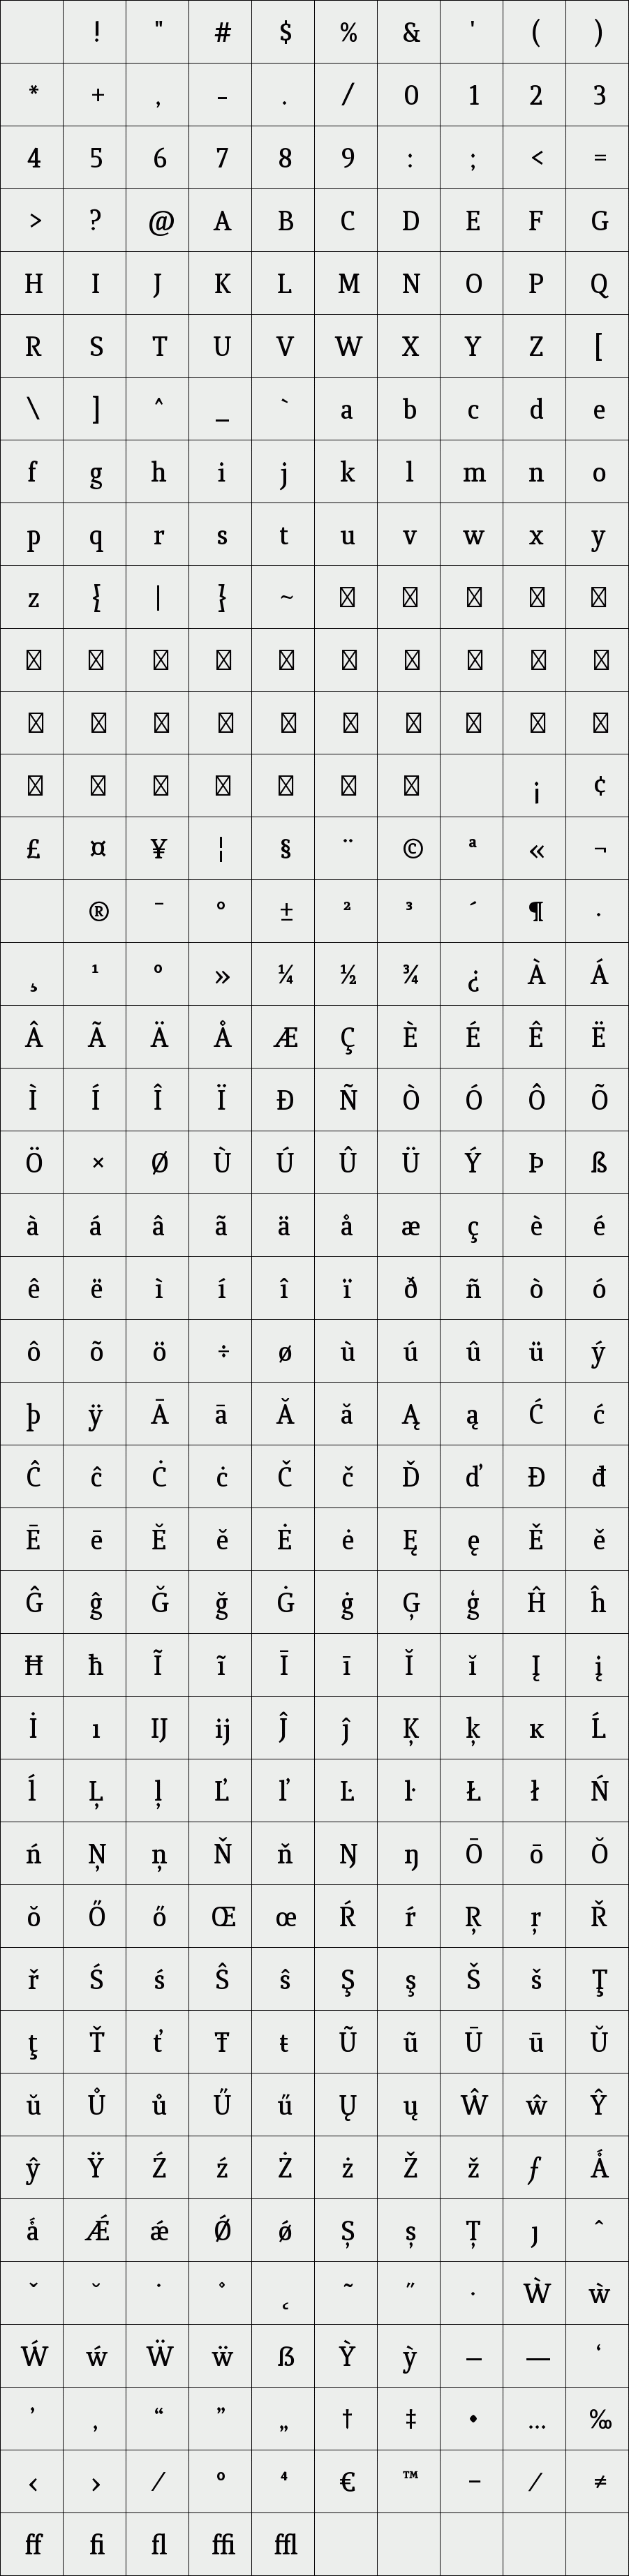 Quiroga Serif DemiBold